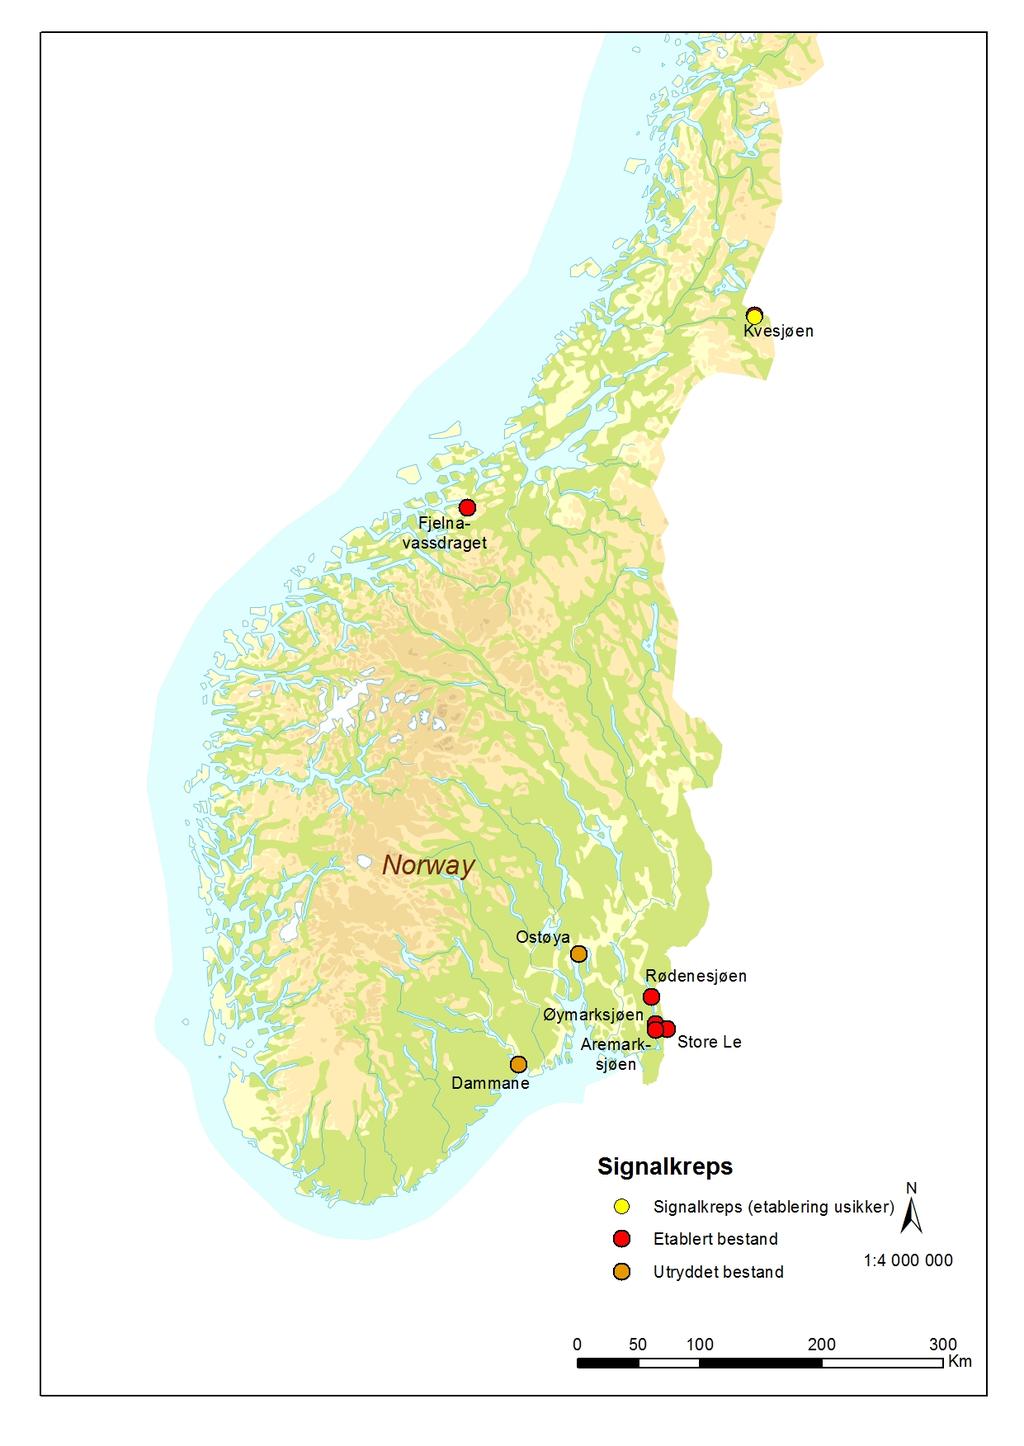 Figur 5. Oversikt over etablerte og utryddete bestander av signalkreps i Norge.